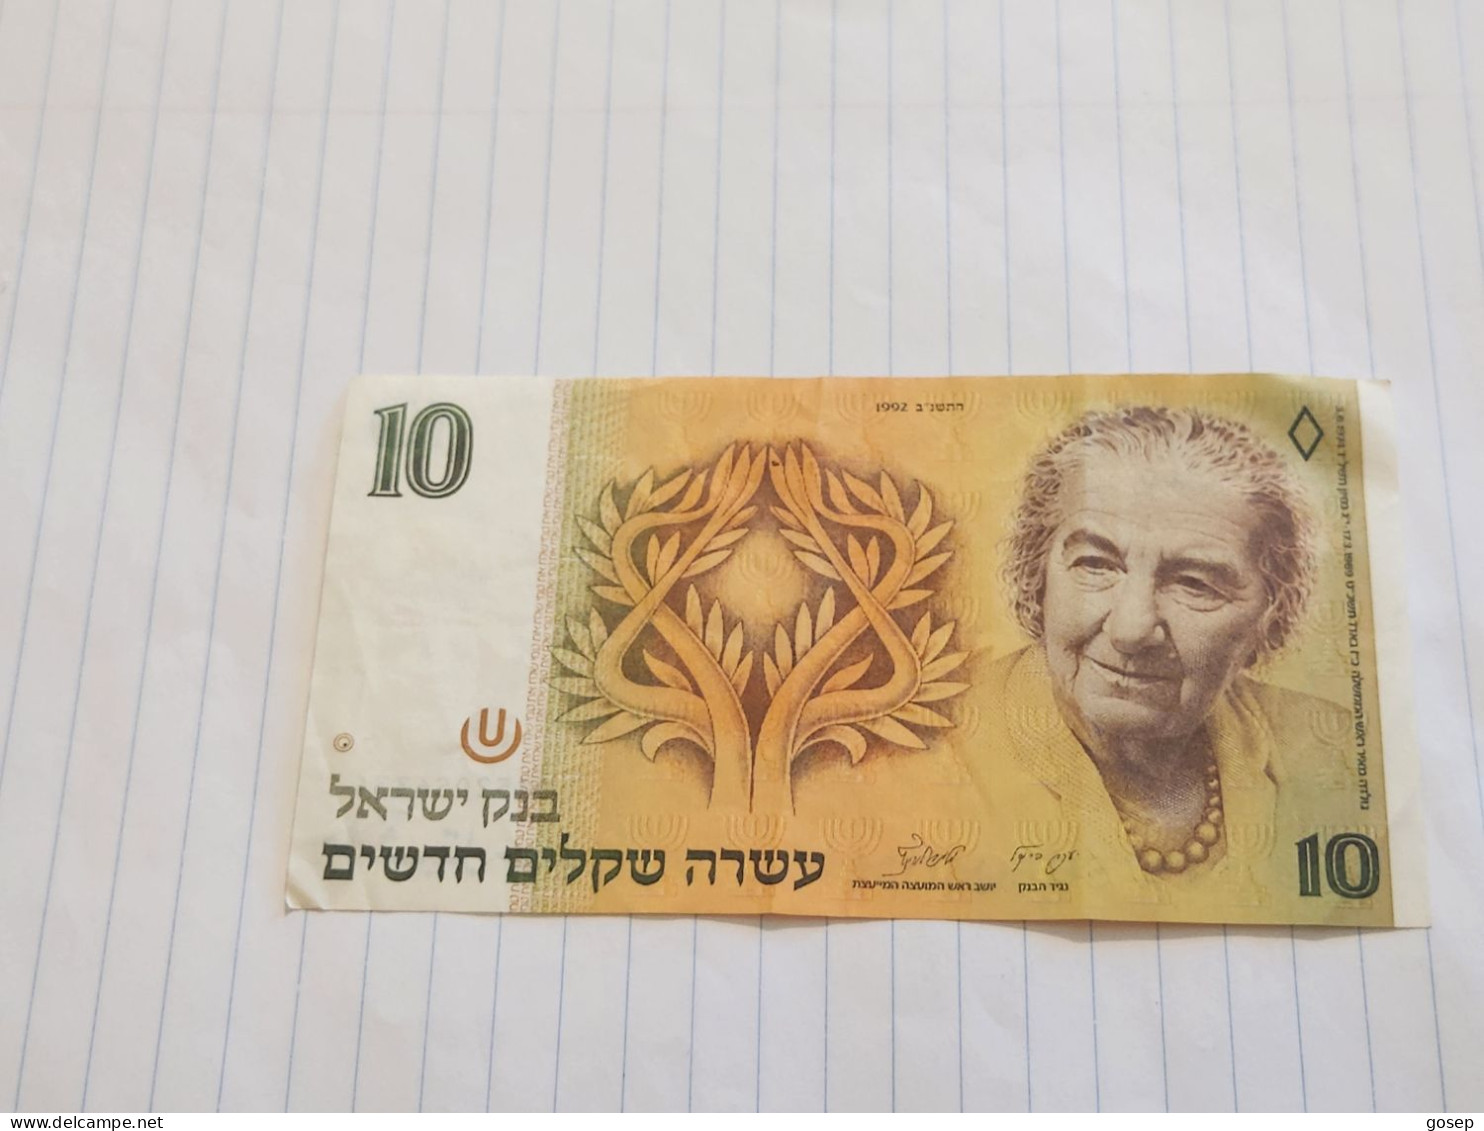 Israel-10 NEW SHEQELIM-GOLDA MEIR-(1992)(542)(LORINCZ/FRENKEL)-(0852056334)-used-bank Note - Israel